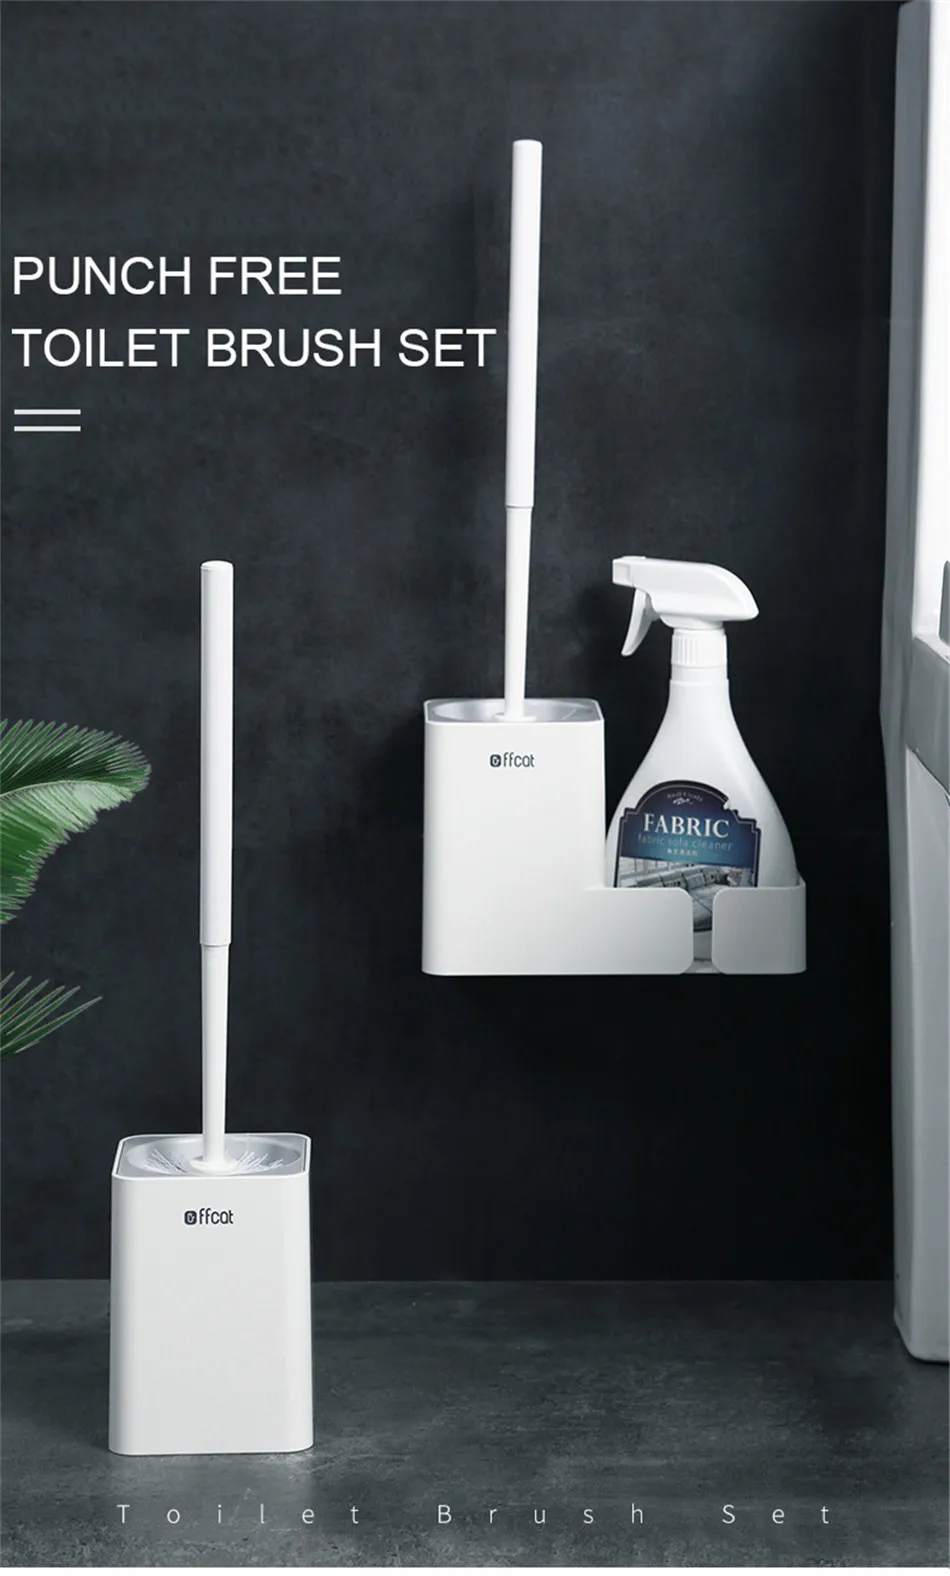 GESEW щетка для туалета ABS материал с длинной ручкой щетка для чистки Дырокол Бытовая Чистящая продукция товары для дома, ванной